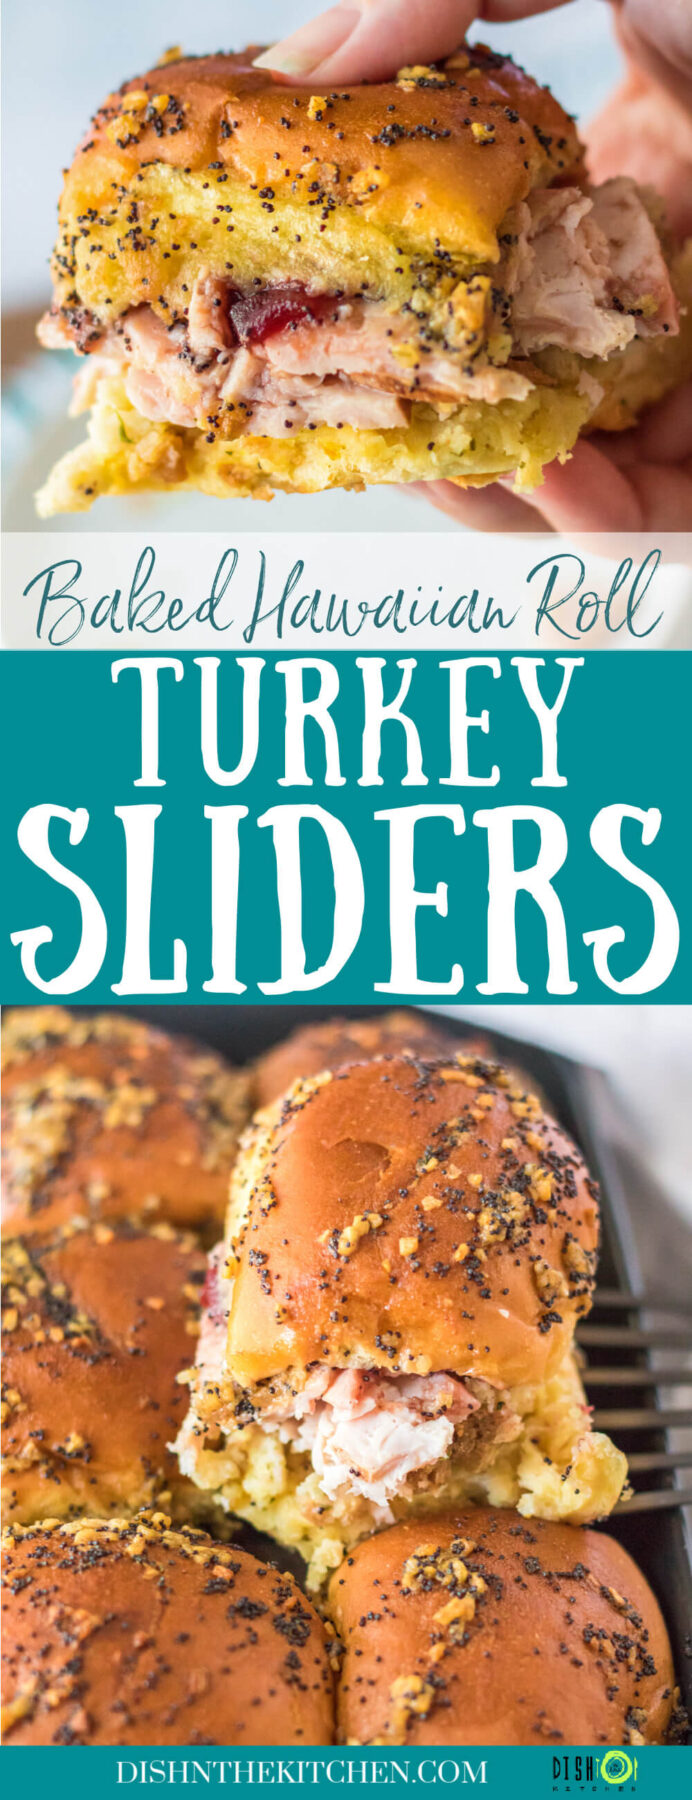 Pinterest image featuring golden baked Hawaiian Roll Turkey Sliders.